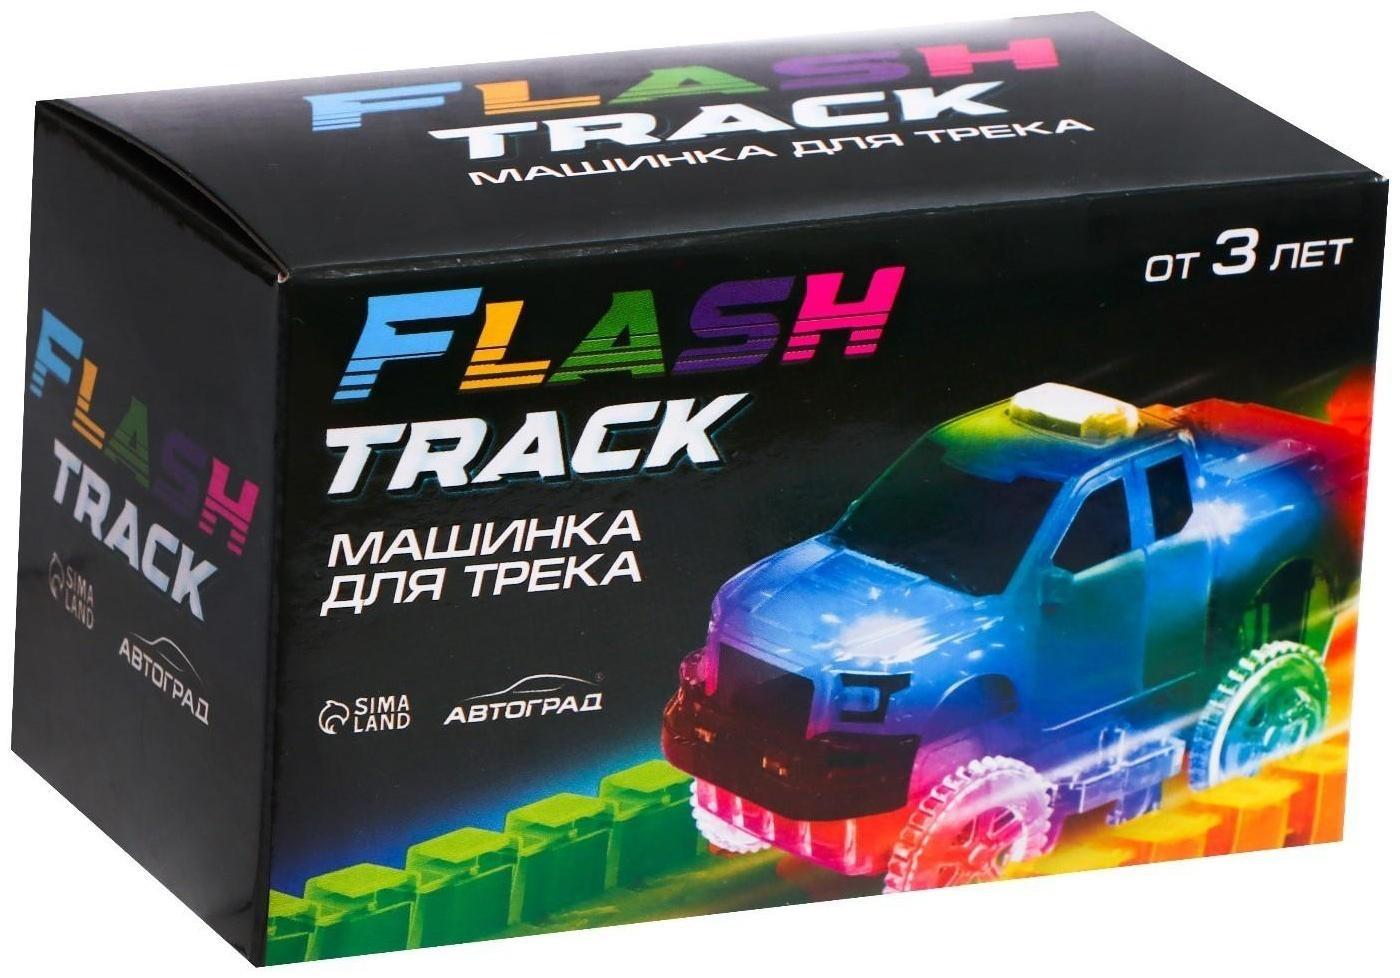 Машинка для гибкого трека Flash Track, с зацепами для петли, цвет красный